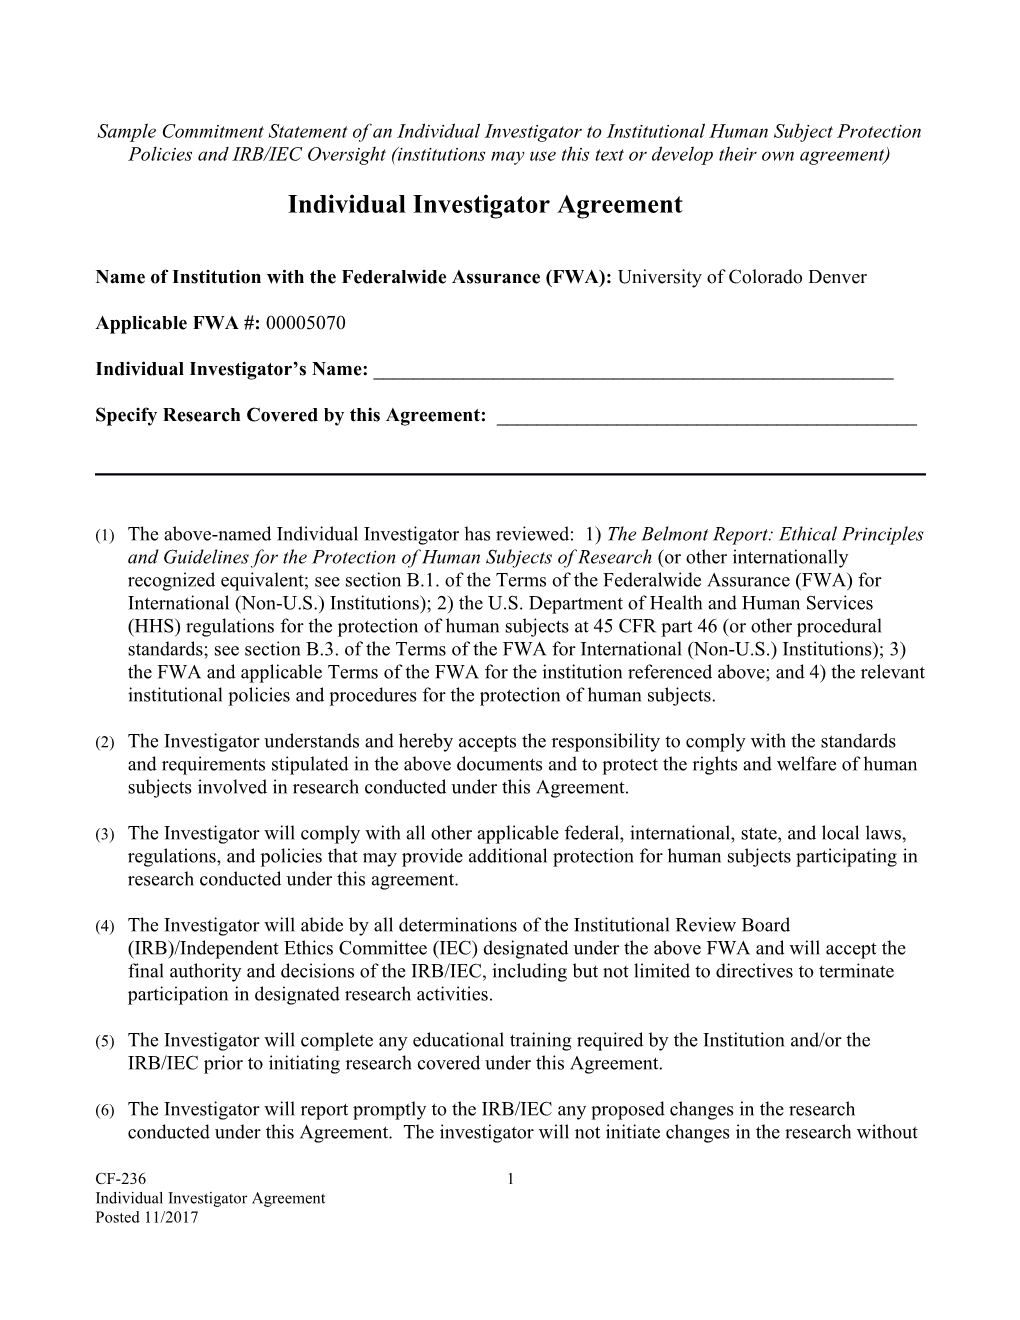 Individual Investigator Agreement